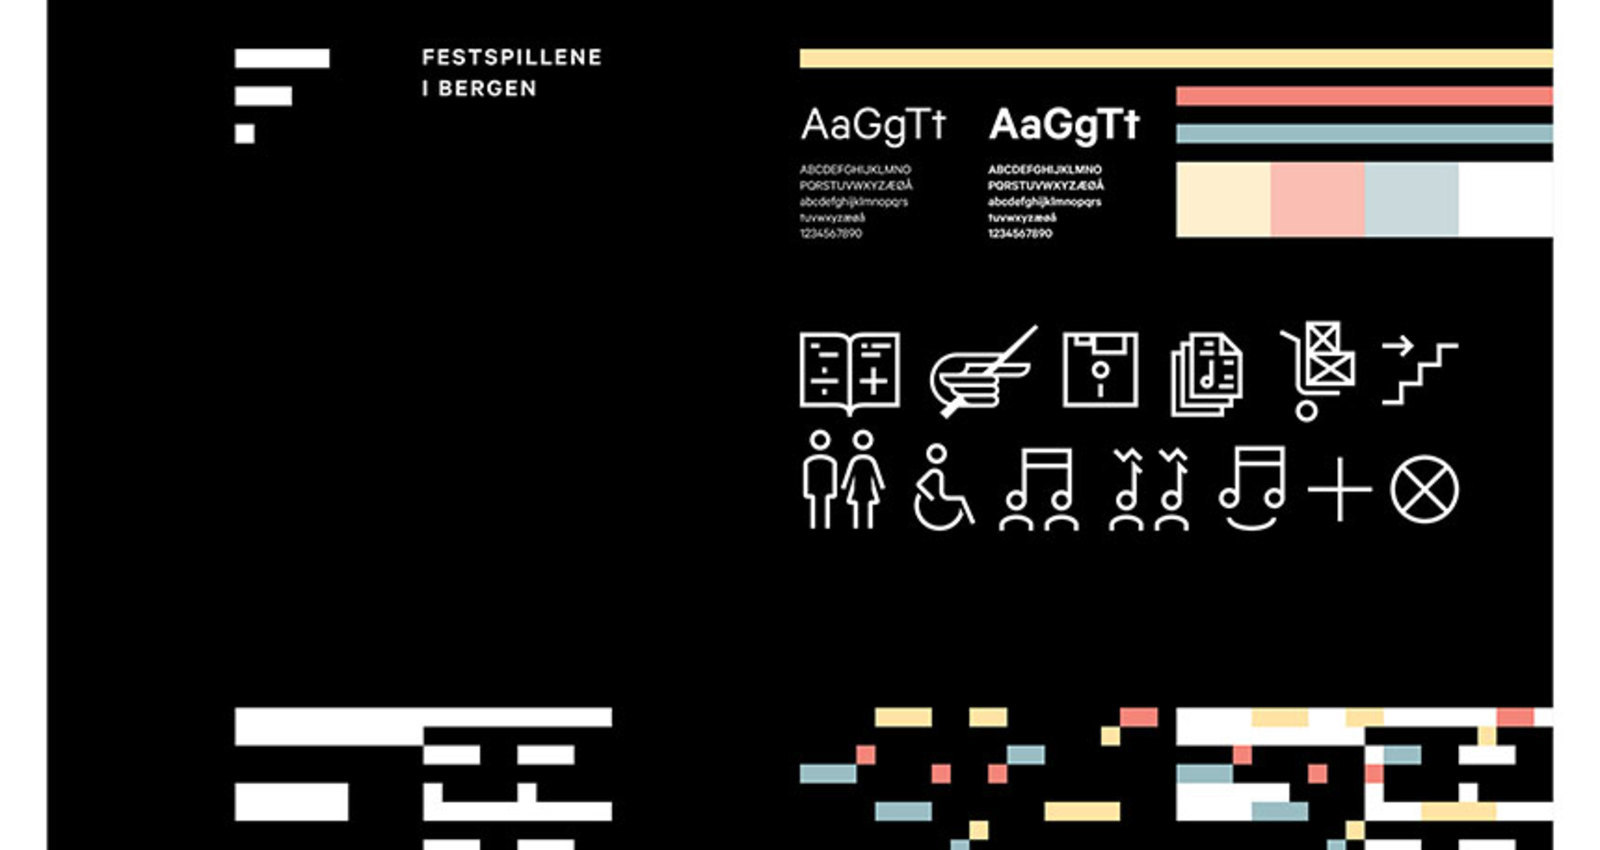 Brand Identity Campaign for Bergen International Festival (Festspillene i Bergen)